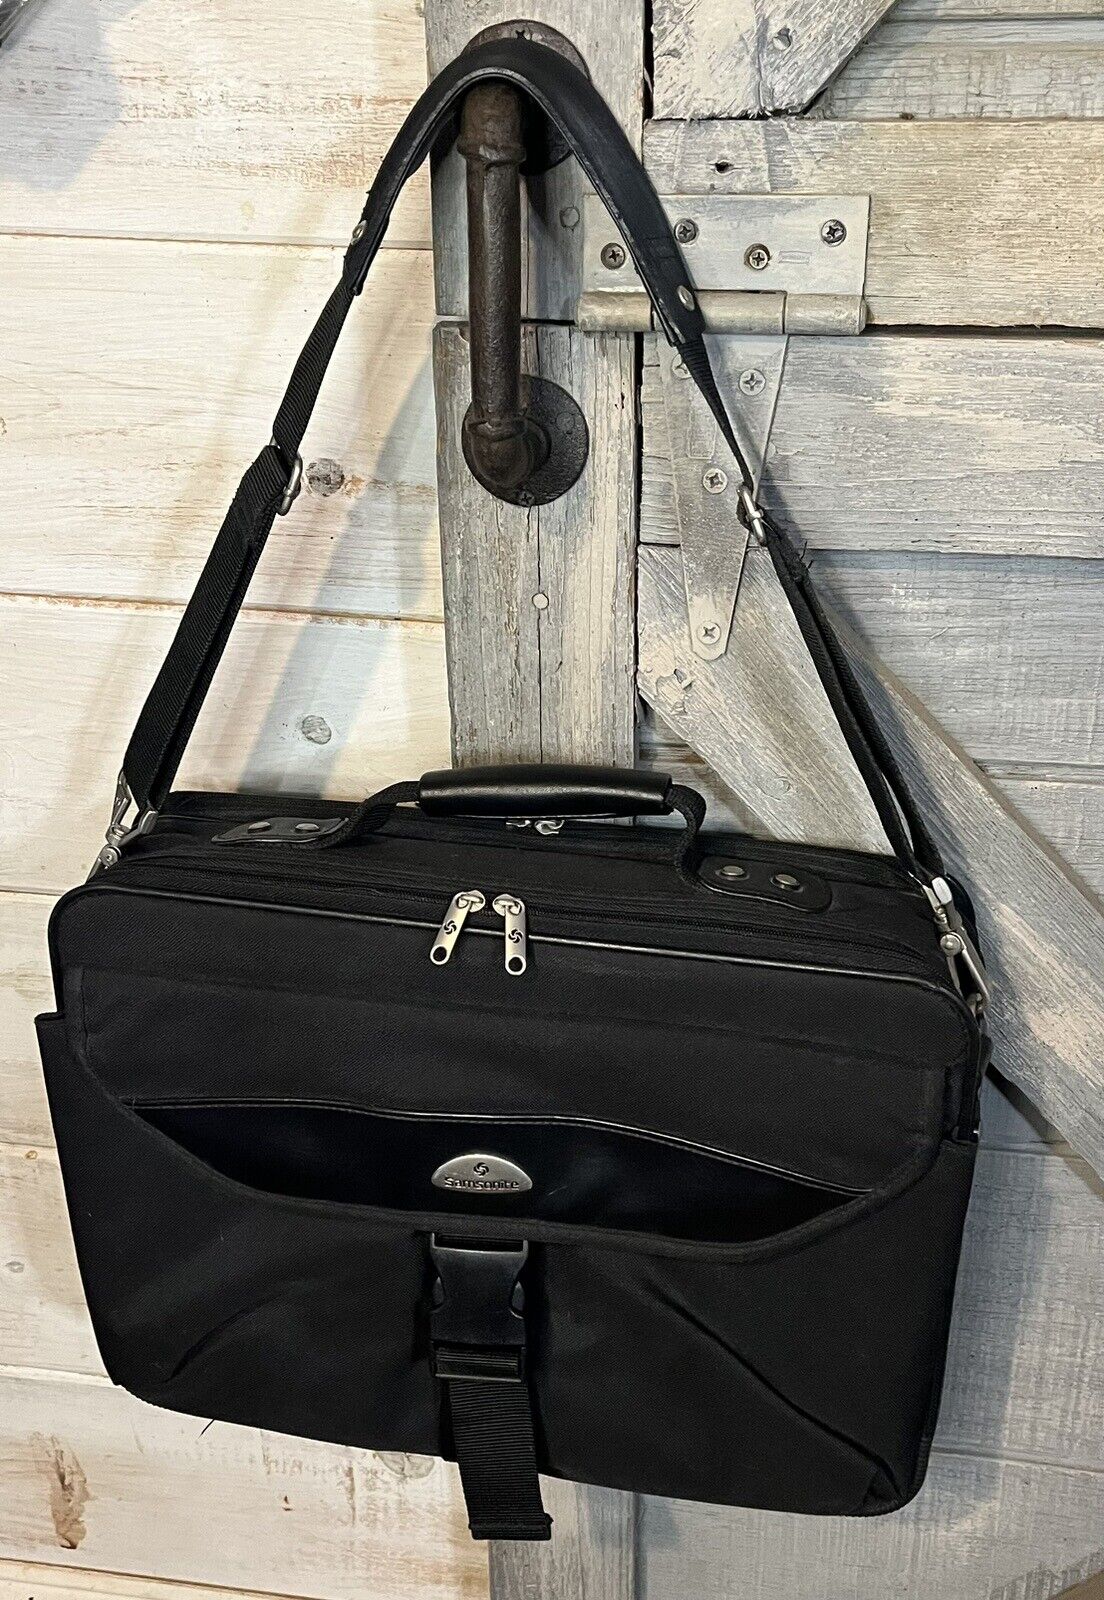 Samsonite Briefcase Carryon Laptop Bag Black Canvas w Padded Shoulder Strap